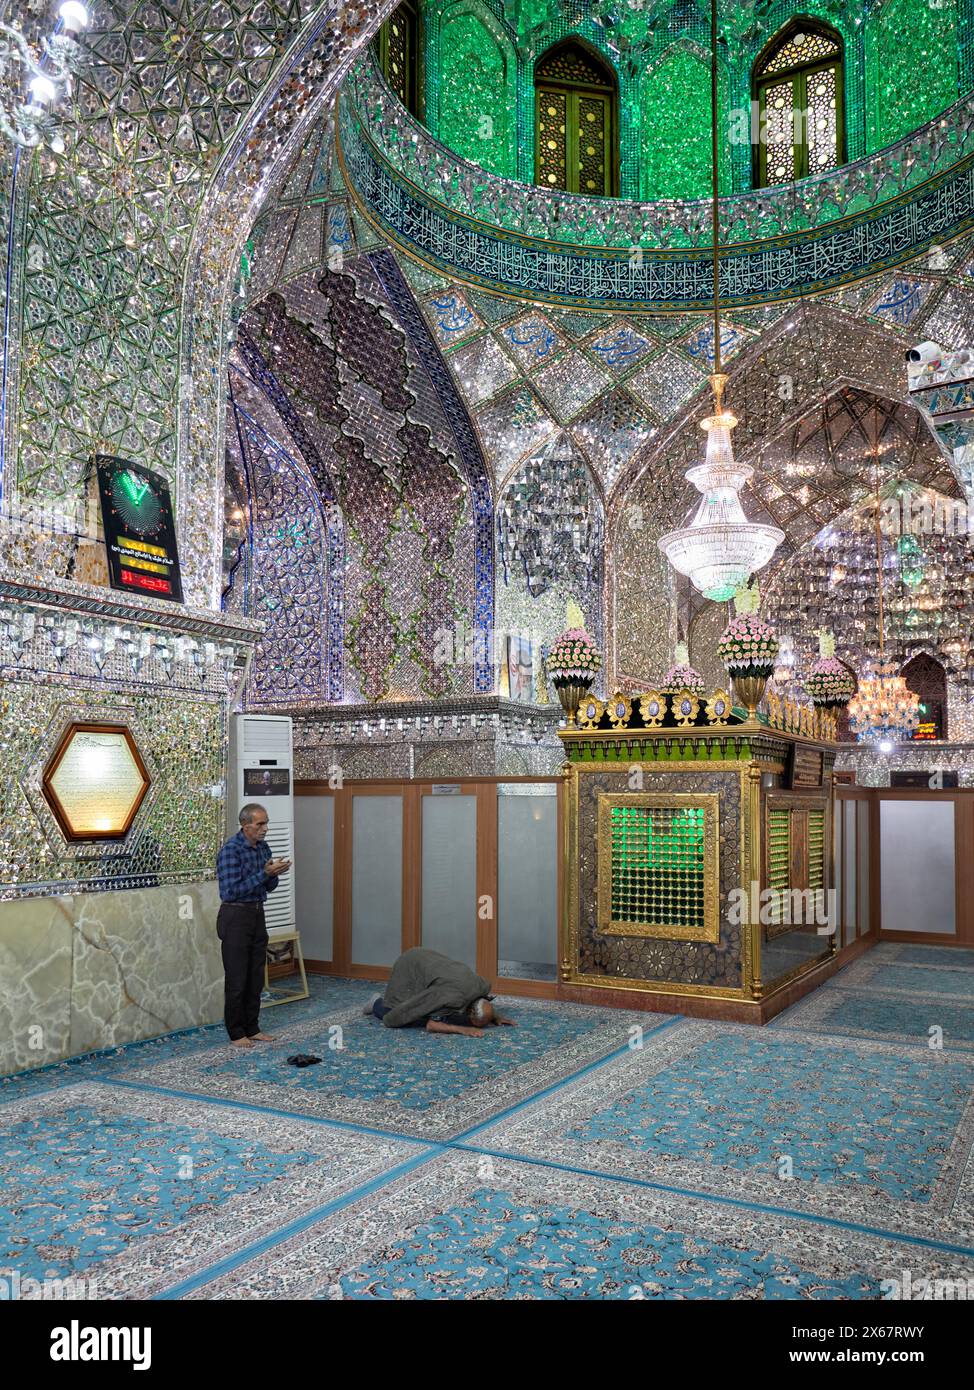 Männer beten im Ali Ibn Hamzeh Heiligtum, das im Inneren aufwendig mit glänzenden Spiegelfliesen (aina-kari) verziert ist. Shiraz, Iran. Stockfoto